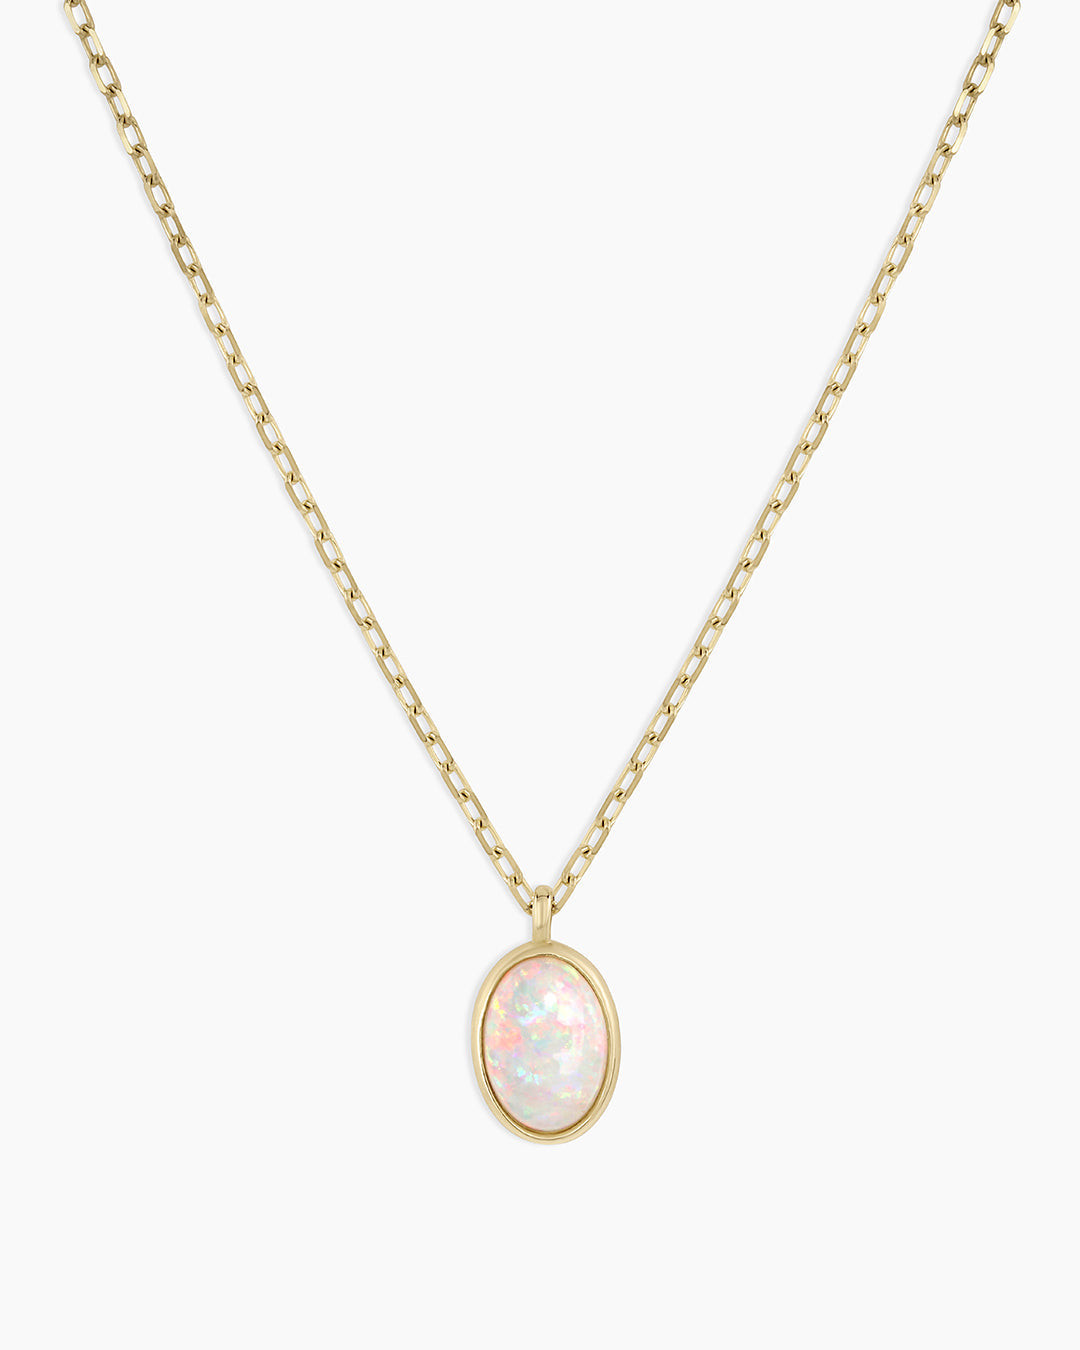 Opal & Diamond Halo Pendant Necklace - Safian & Rudolph Jewelers